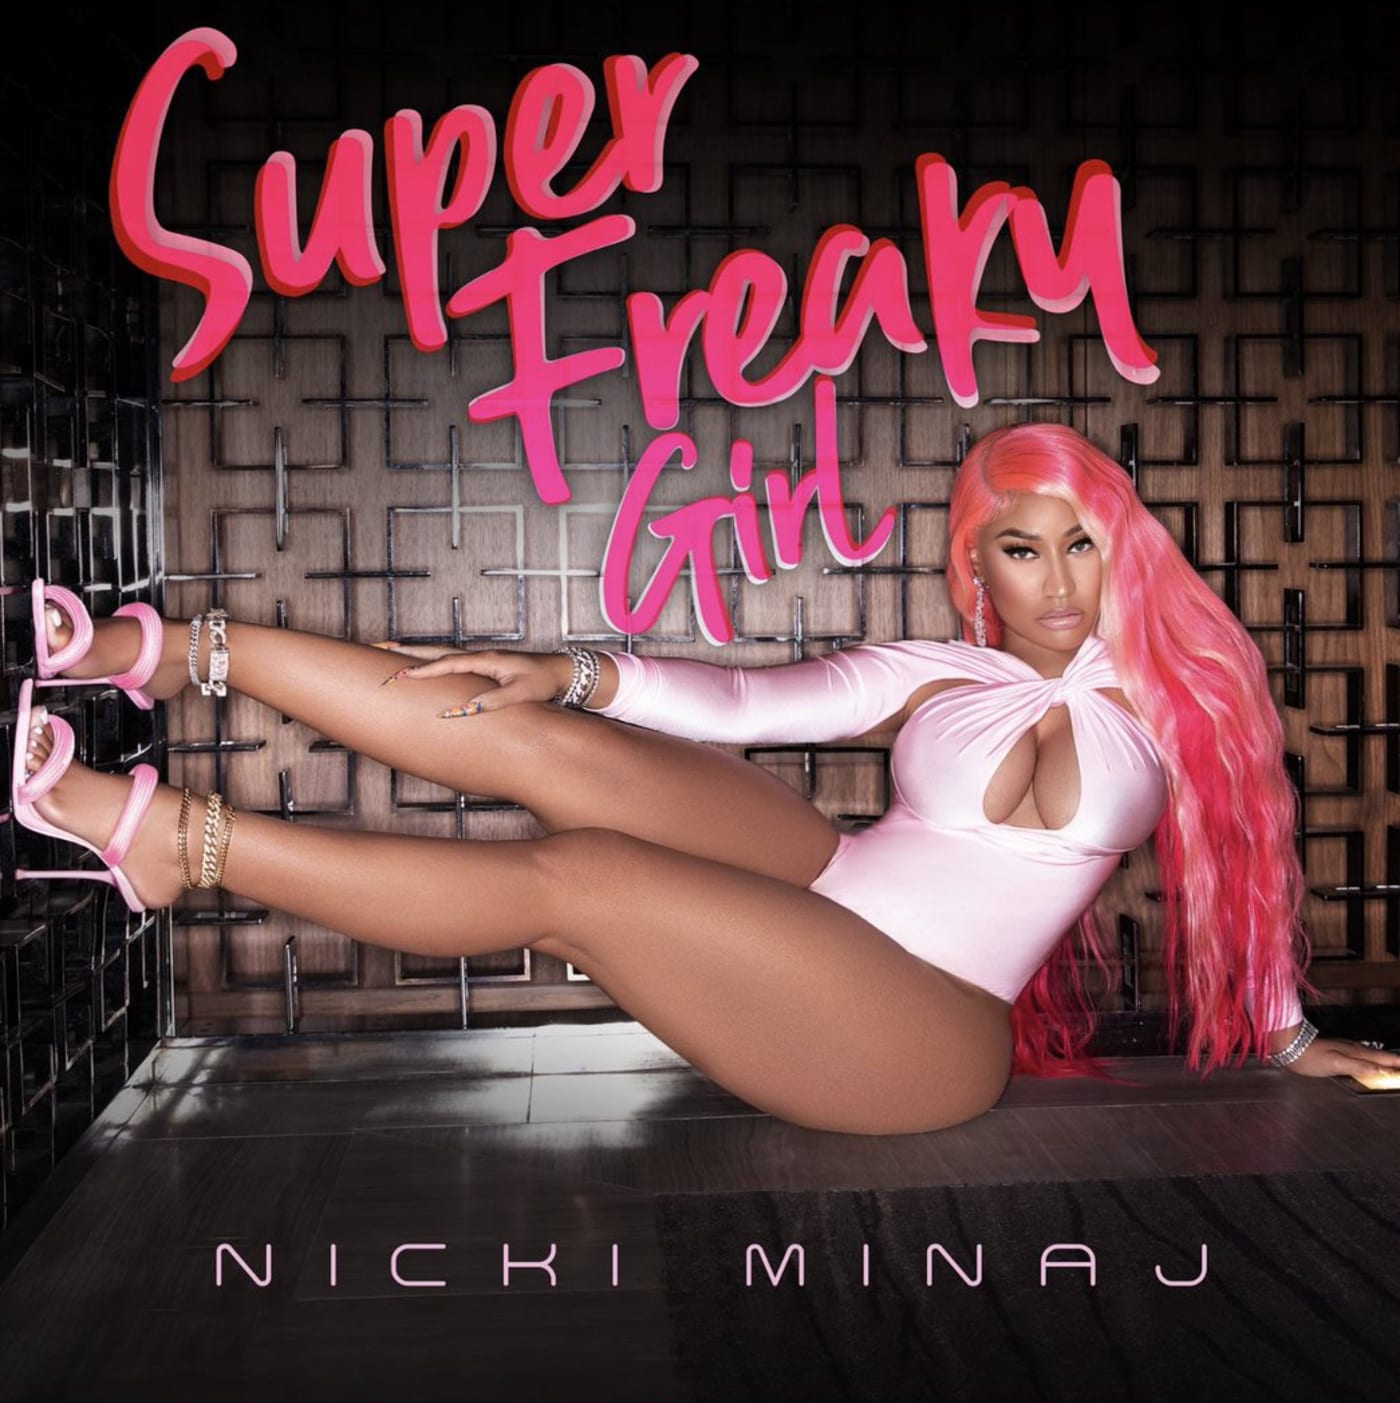 Listen to Nicki Minaj’s New Song “Super Freaky Girl” Sampling Rick James